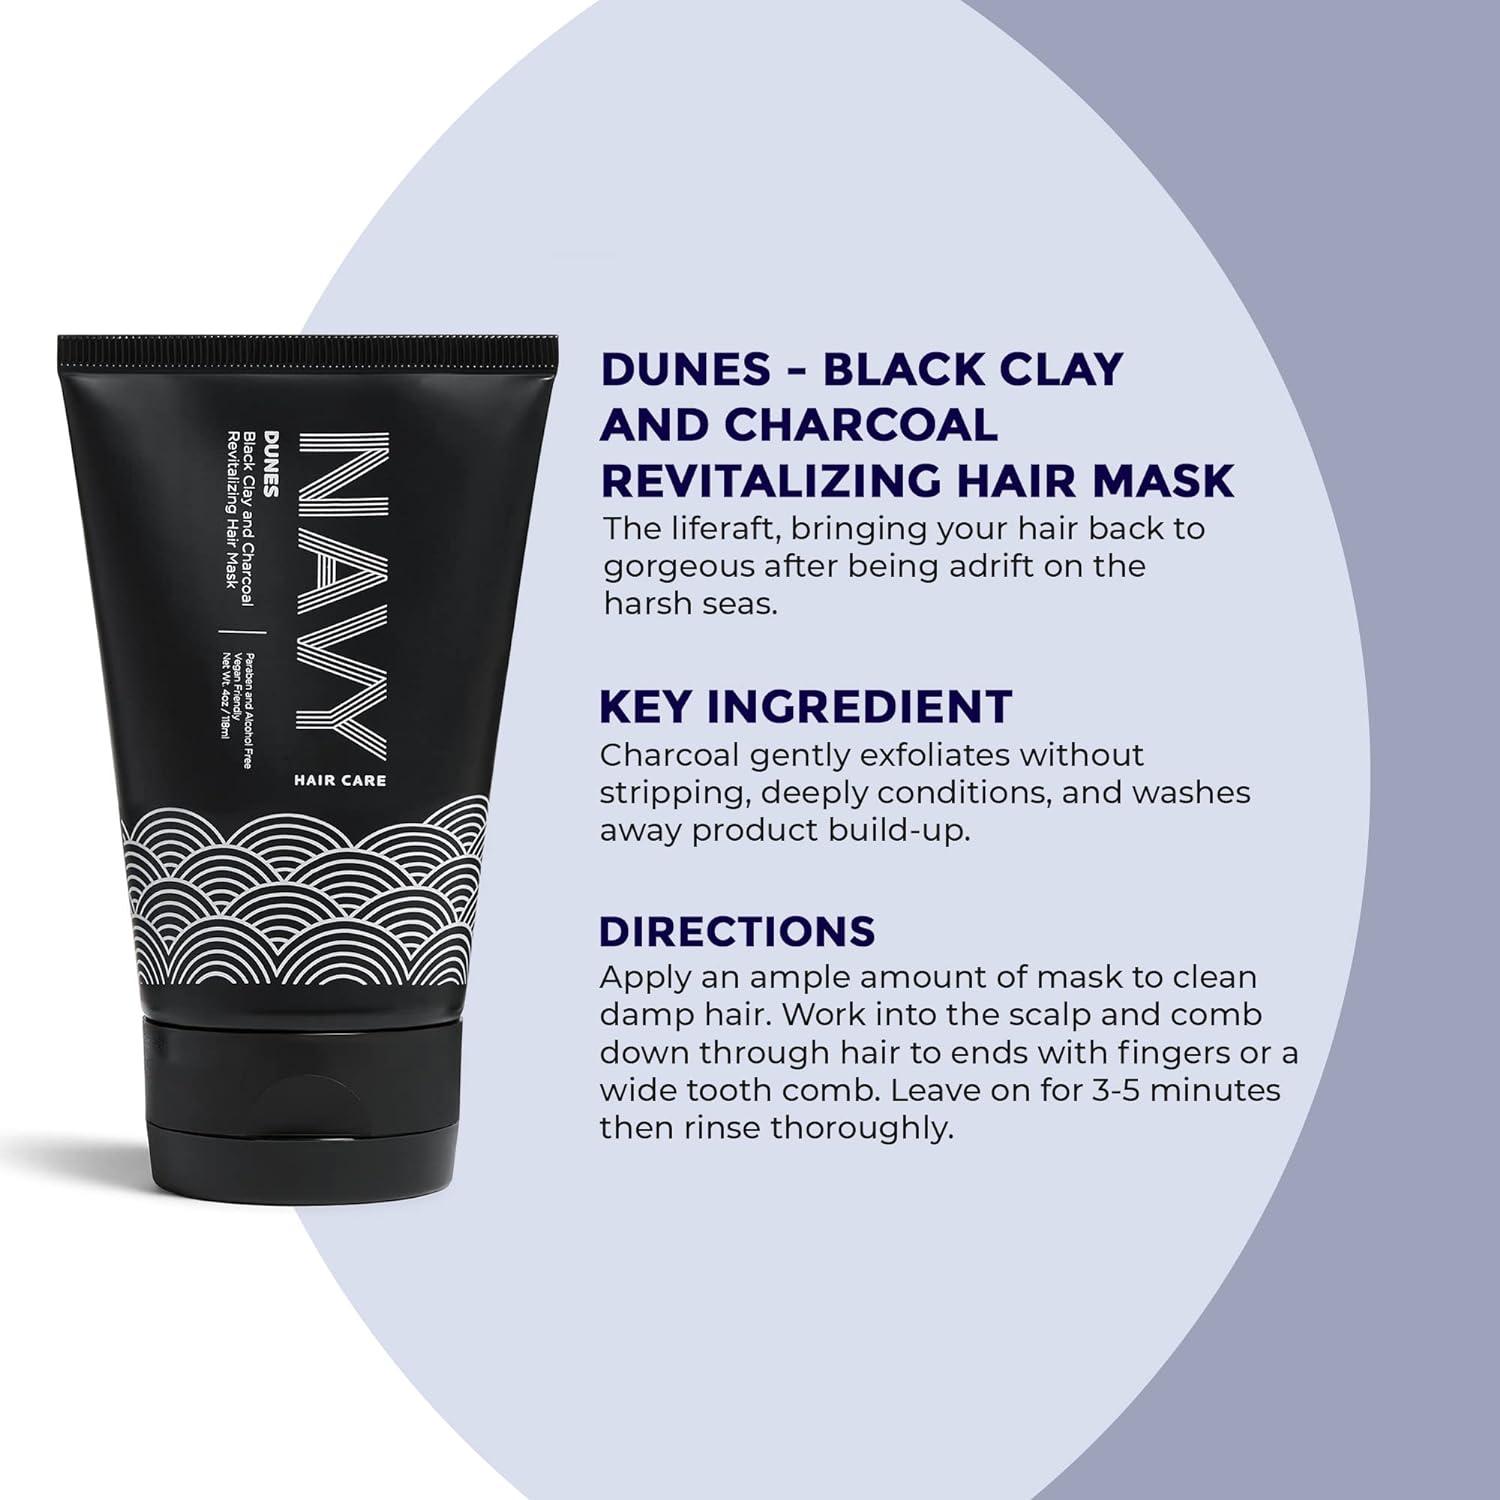 NAVY Hair Care Pebble Beach Dry Texture Spray Hair Volumizing Spray 7oz NEW